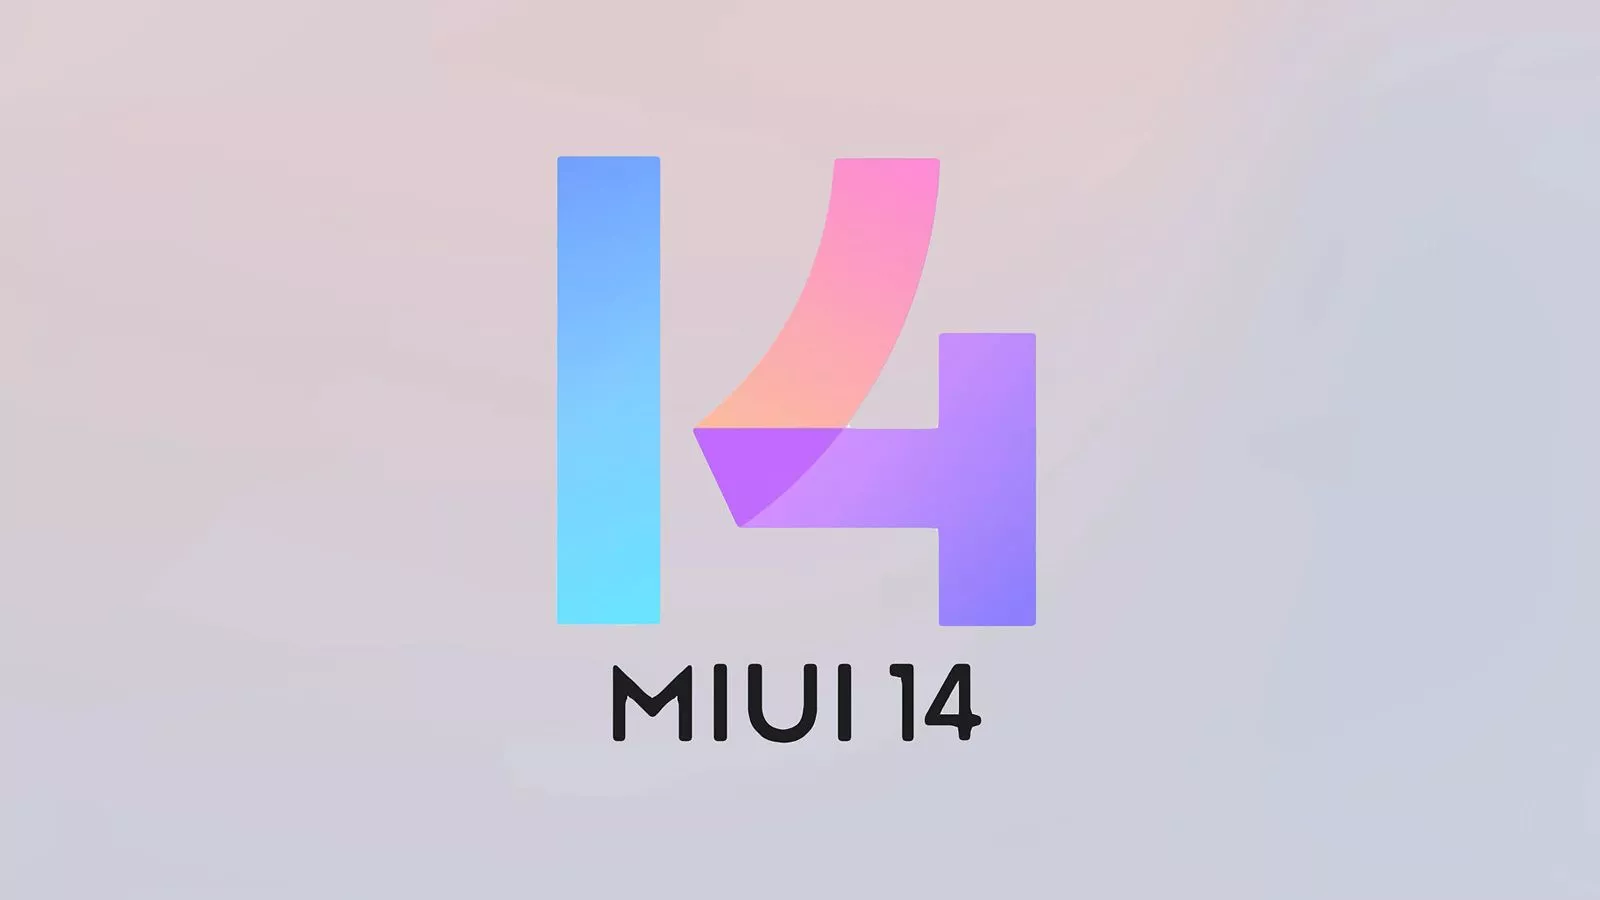 18 smartphones Xiaomi recevront le firmware MIUI 14 stable au niveau mondial d'ici la fin mars - liste officielle publiée